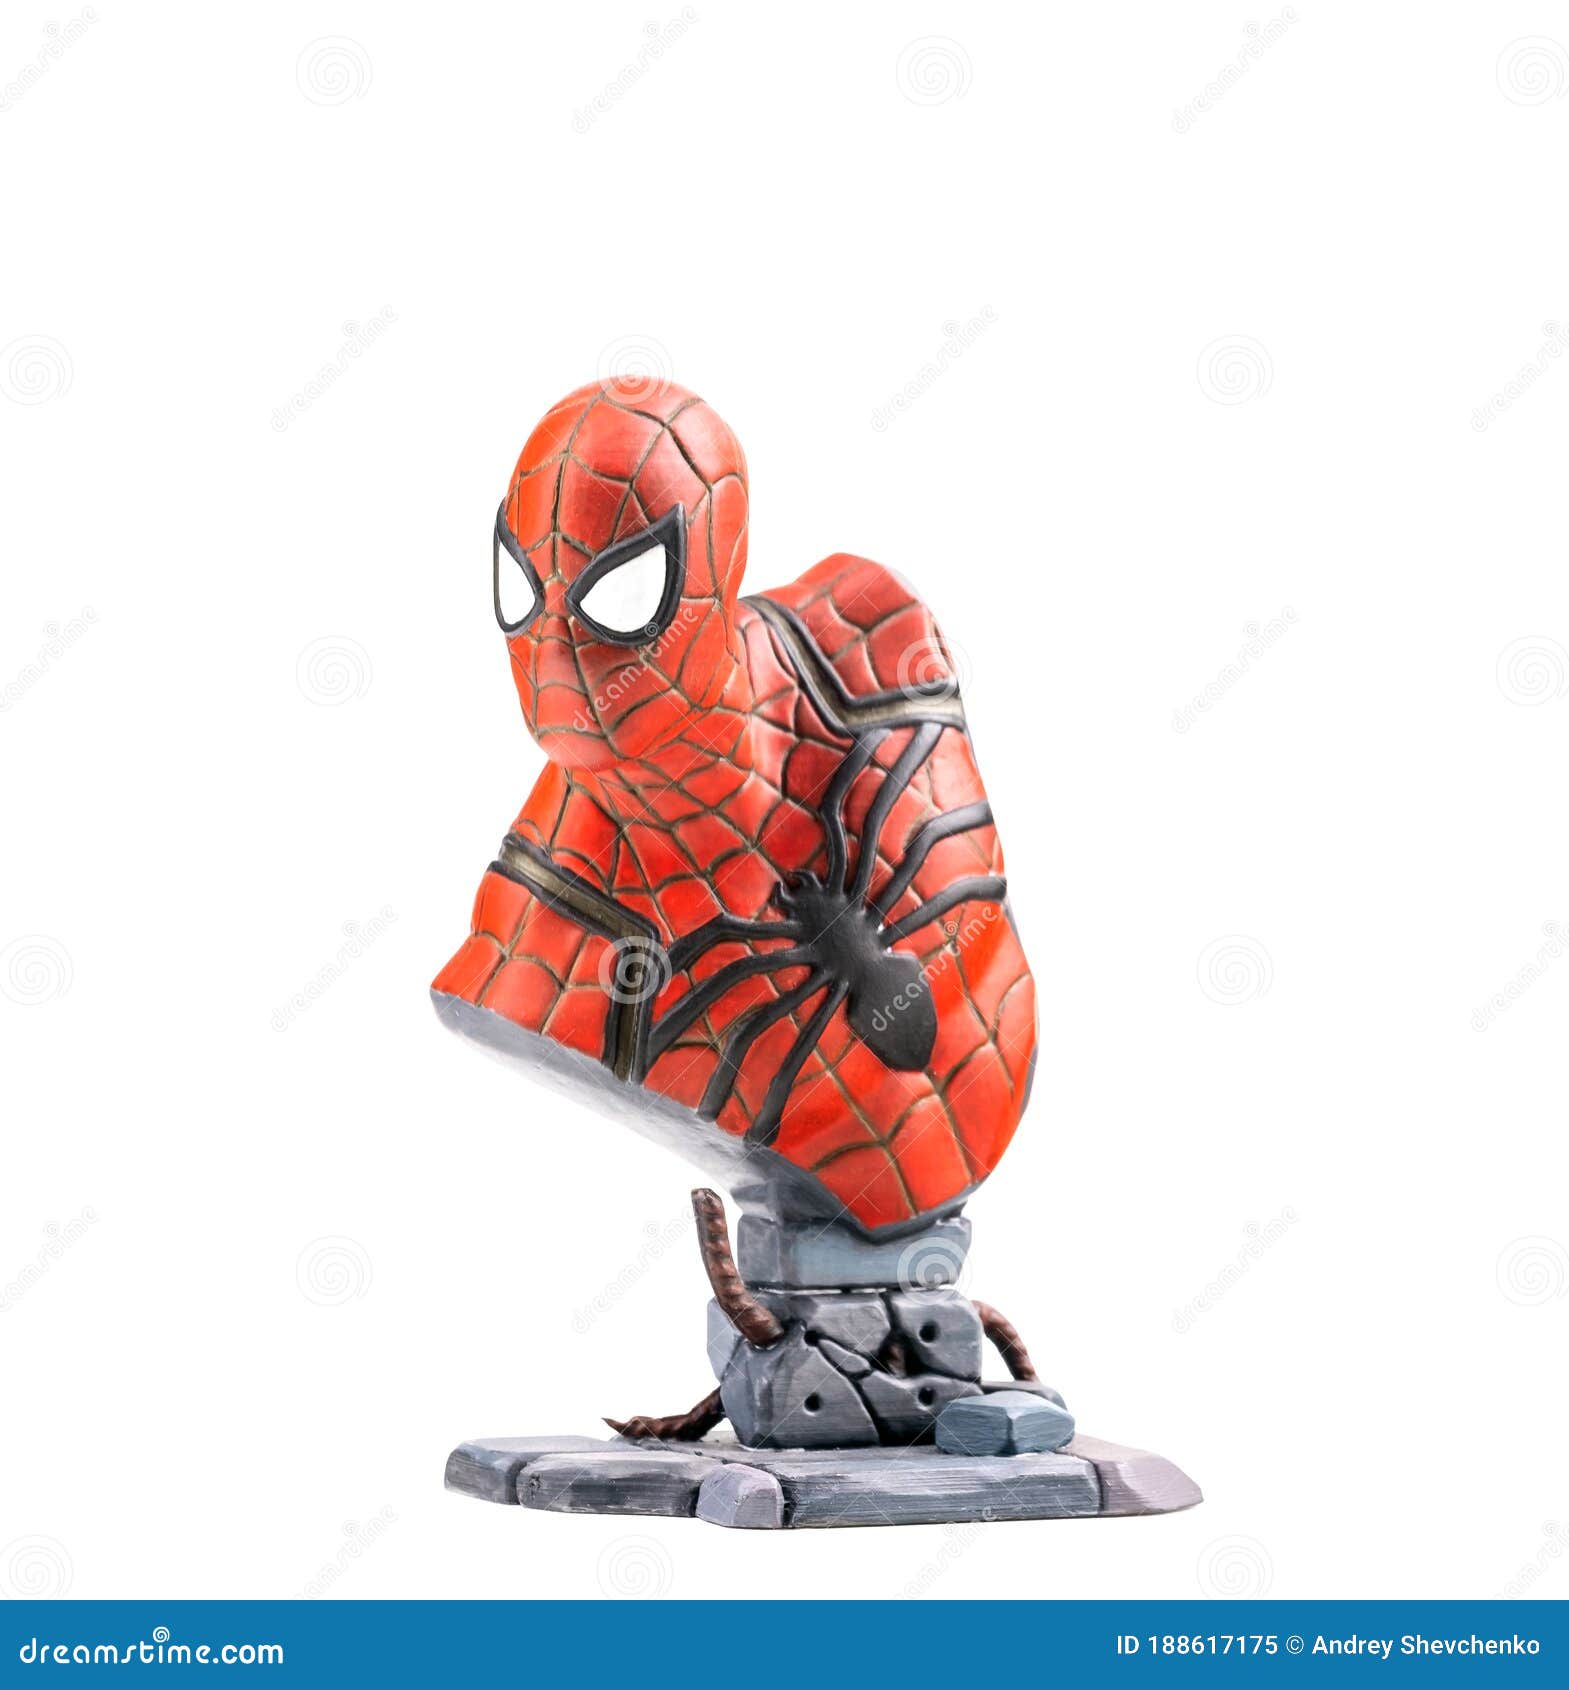 Bạn tò mò về cách Spider-man được in trên máy in 3D trên nền màu trắng độc đáo? Hình ảnh về sản phẩm Marvel này sẽ khiến bạn thích thú! Với thiết kế xuất sắc và độ chân thực ấn tượng, chiếc máy in 3D này mang đến một trải nghiệm thú vị cho những người yêu thích vũ trụ Marvel và siêu anh hùng Spider Man.